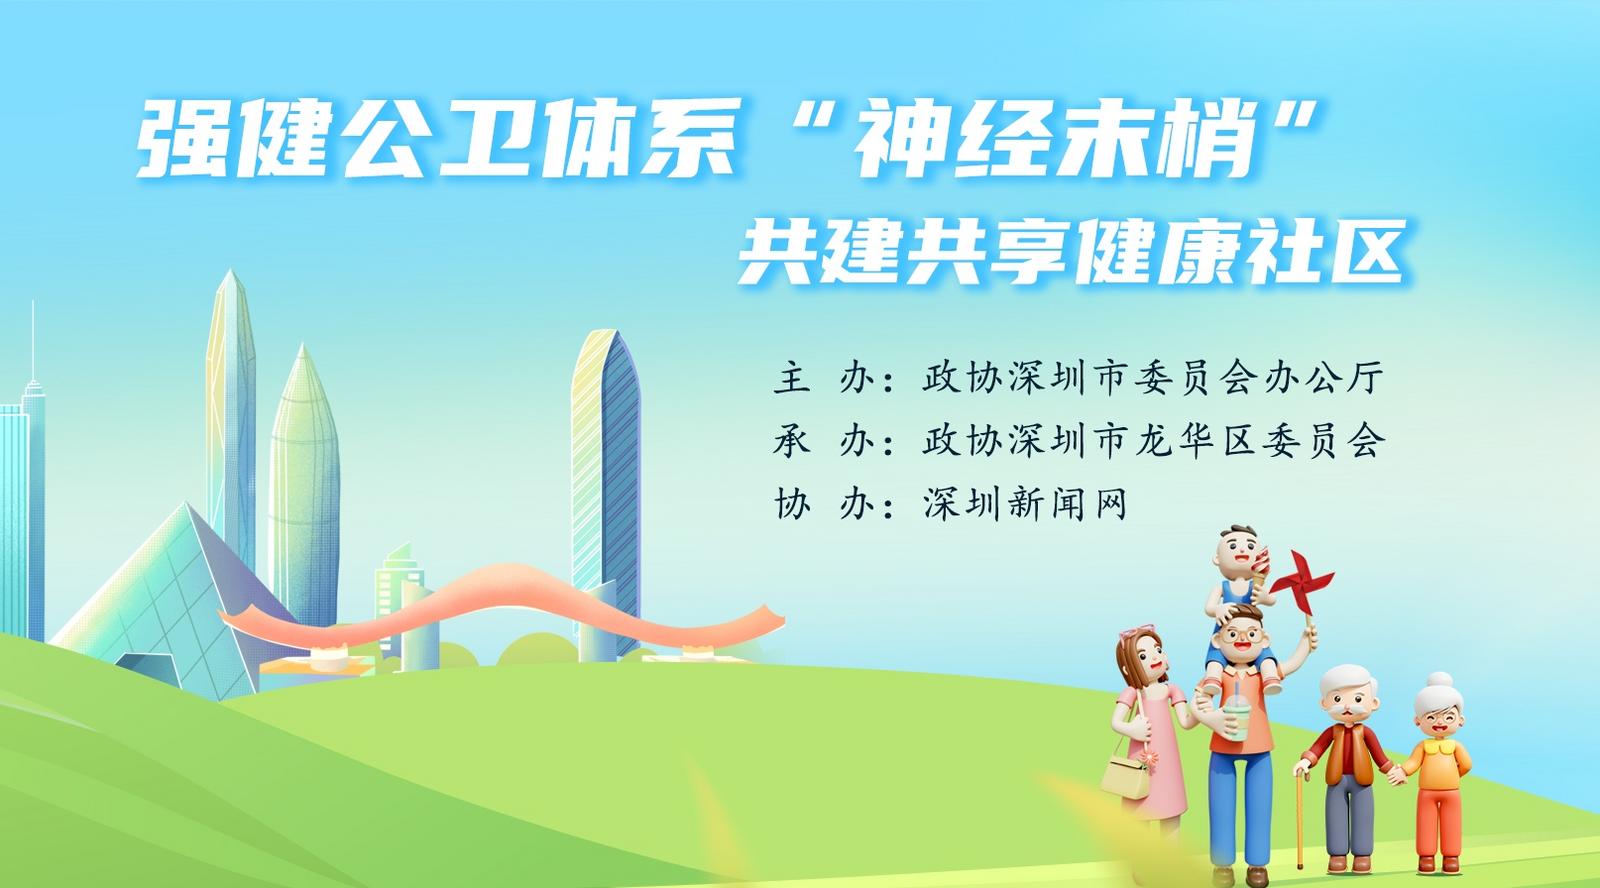 预告|深圳如何织好公共卫生健康网 23日政协委员开麦热议